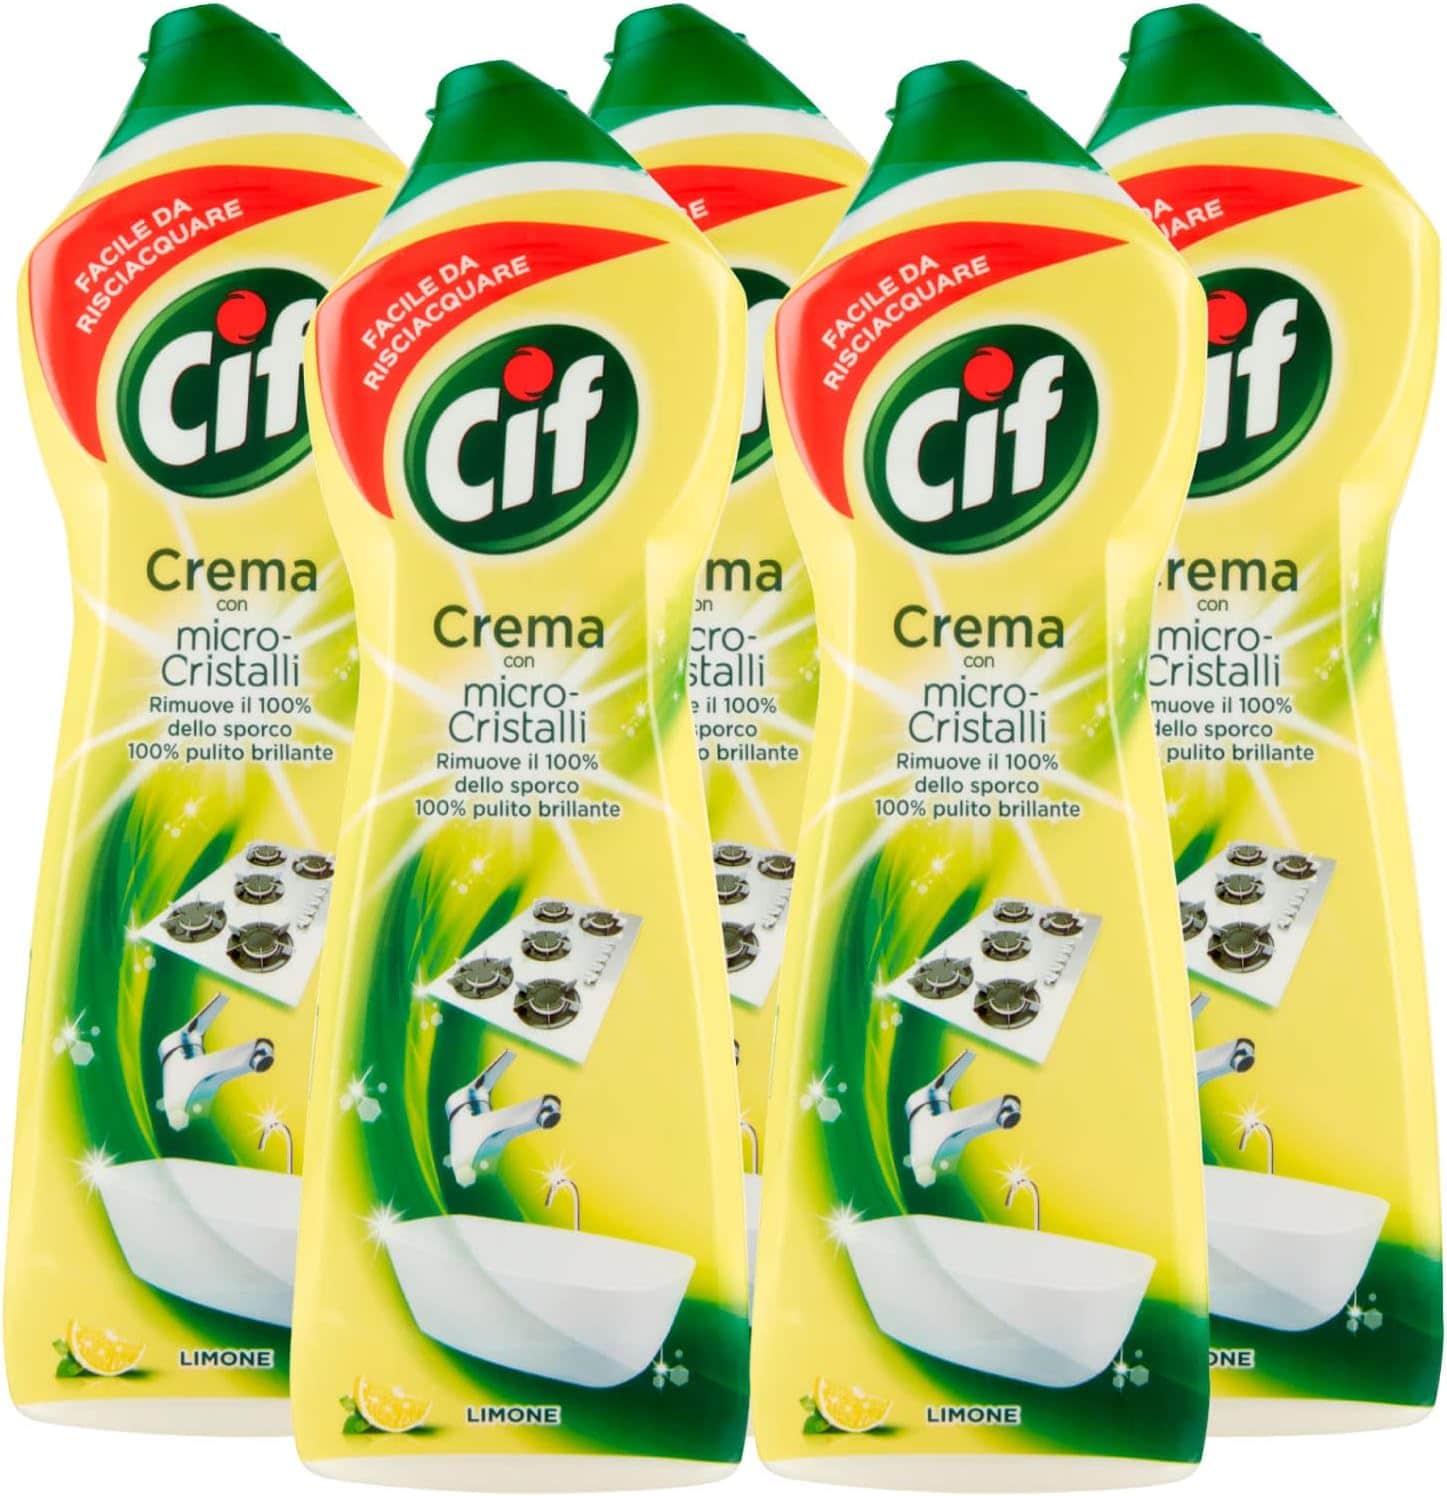 5x Cif Detergente in Crema Multisuperficie con Micro-Cristalli a Limone 3617687.